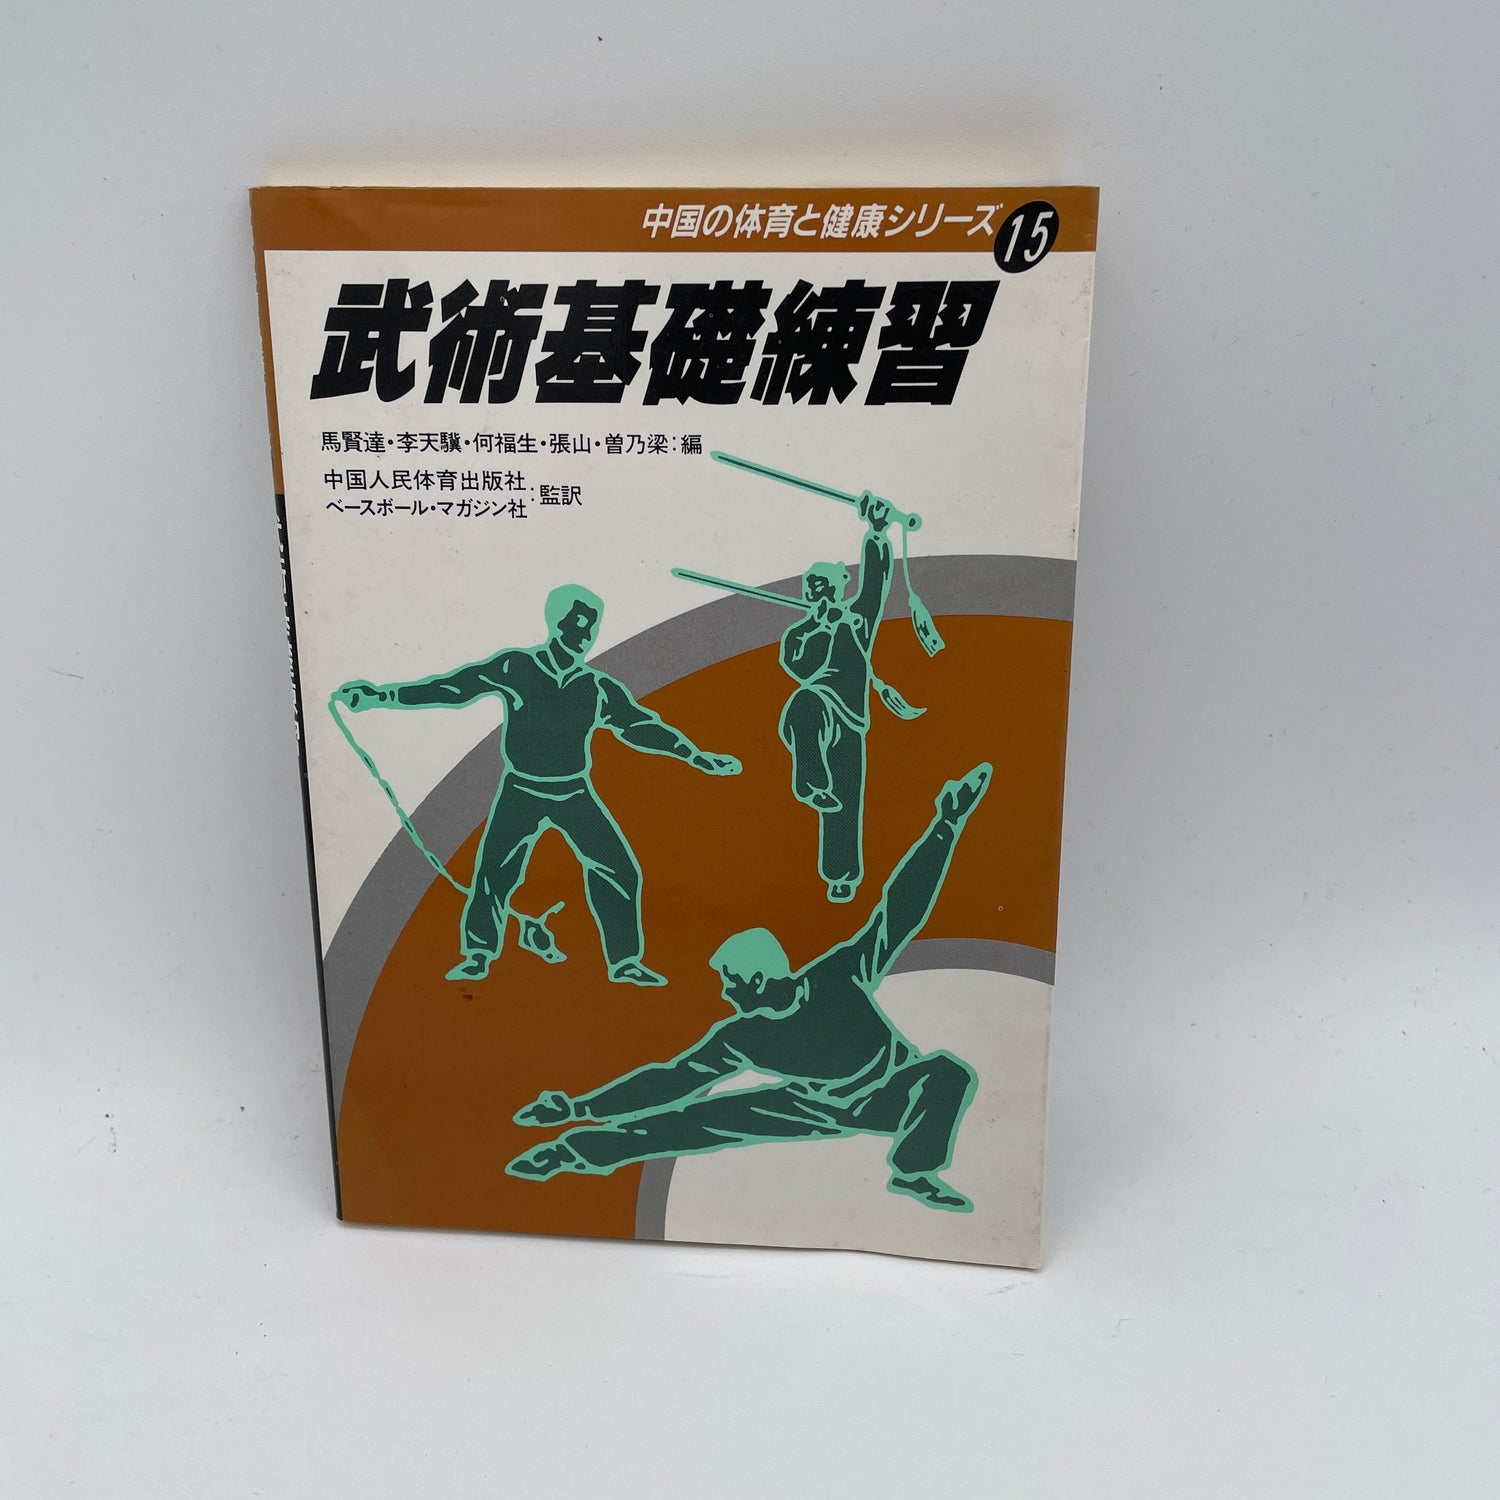 Práctica de la Fundación Bujutsu: Serie China de Educación Física y Salud #15 Libro (usado)